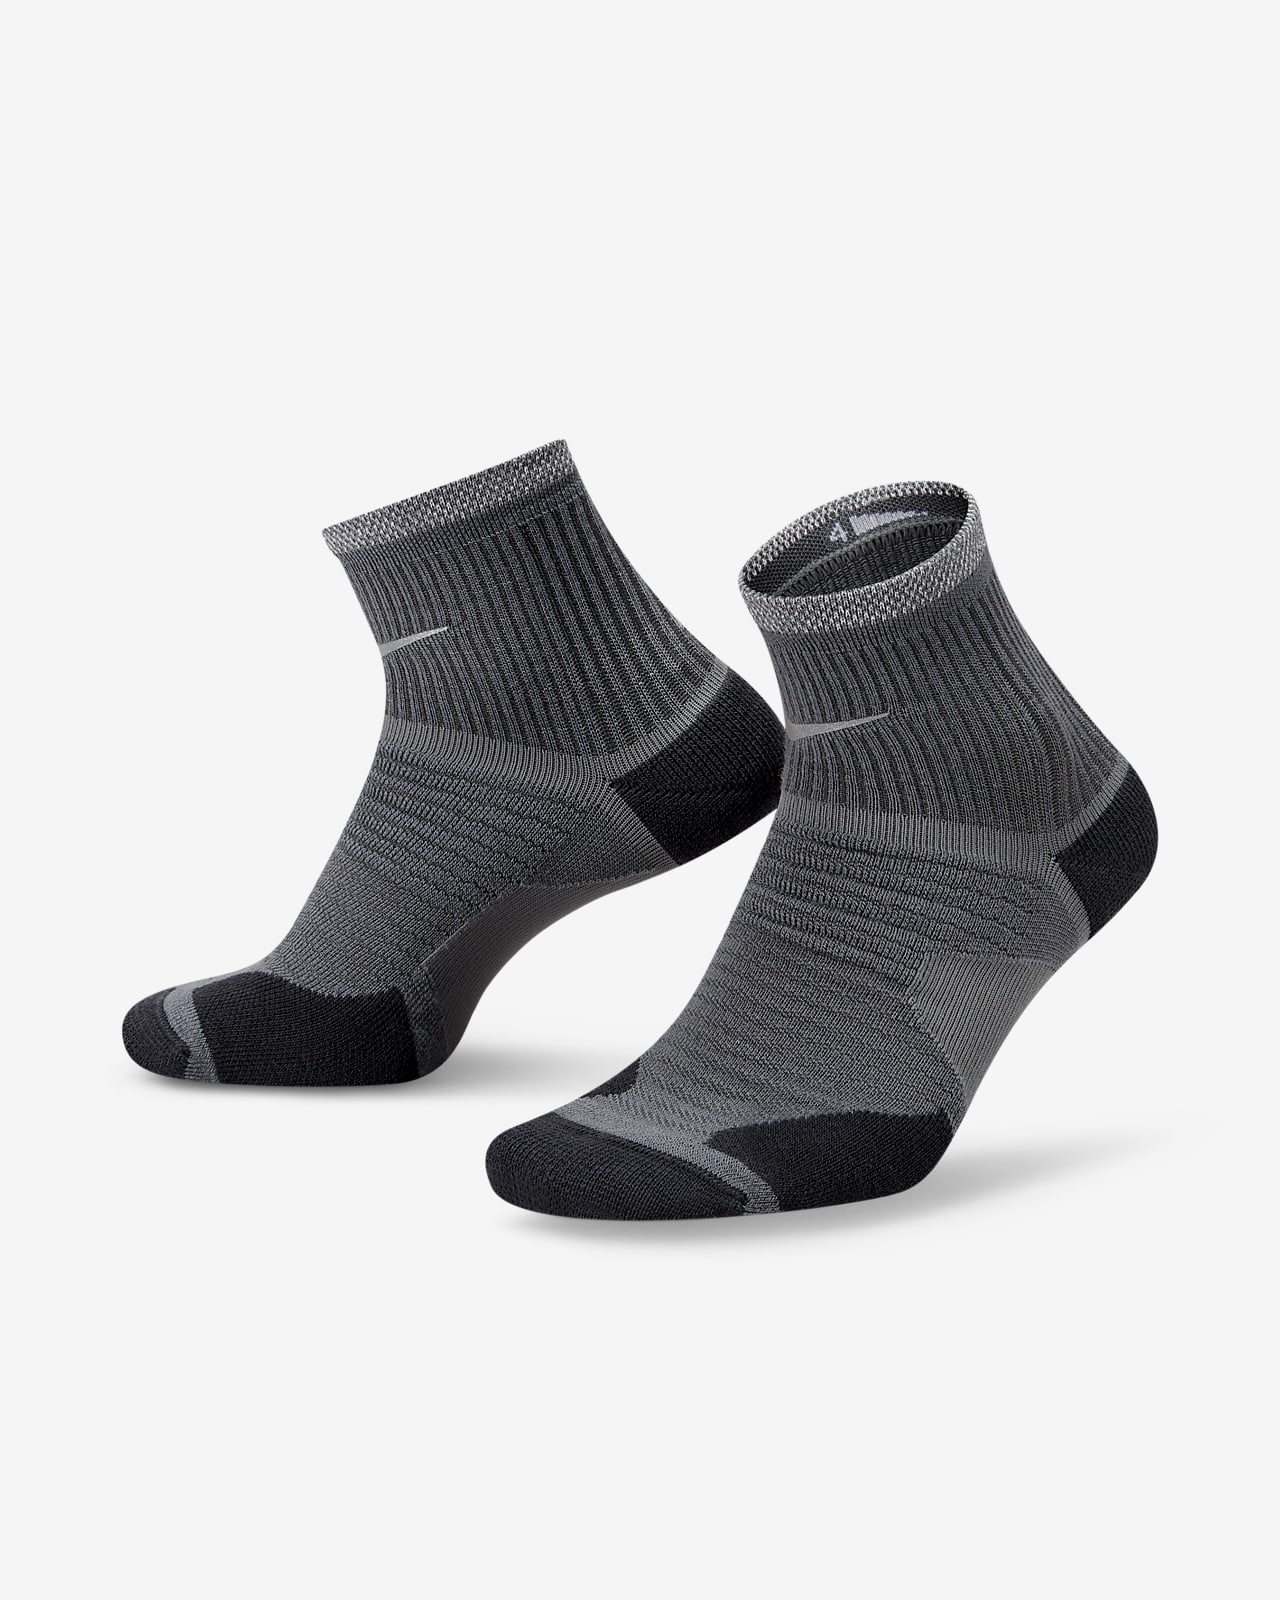 Nike Spark Wool Bilek Koşu Çorapları